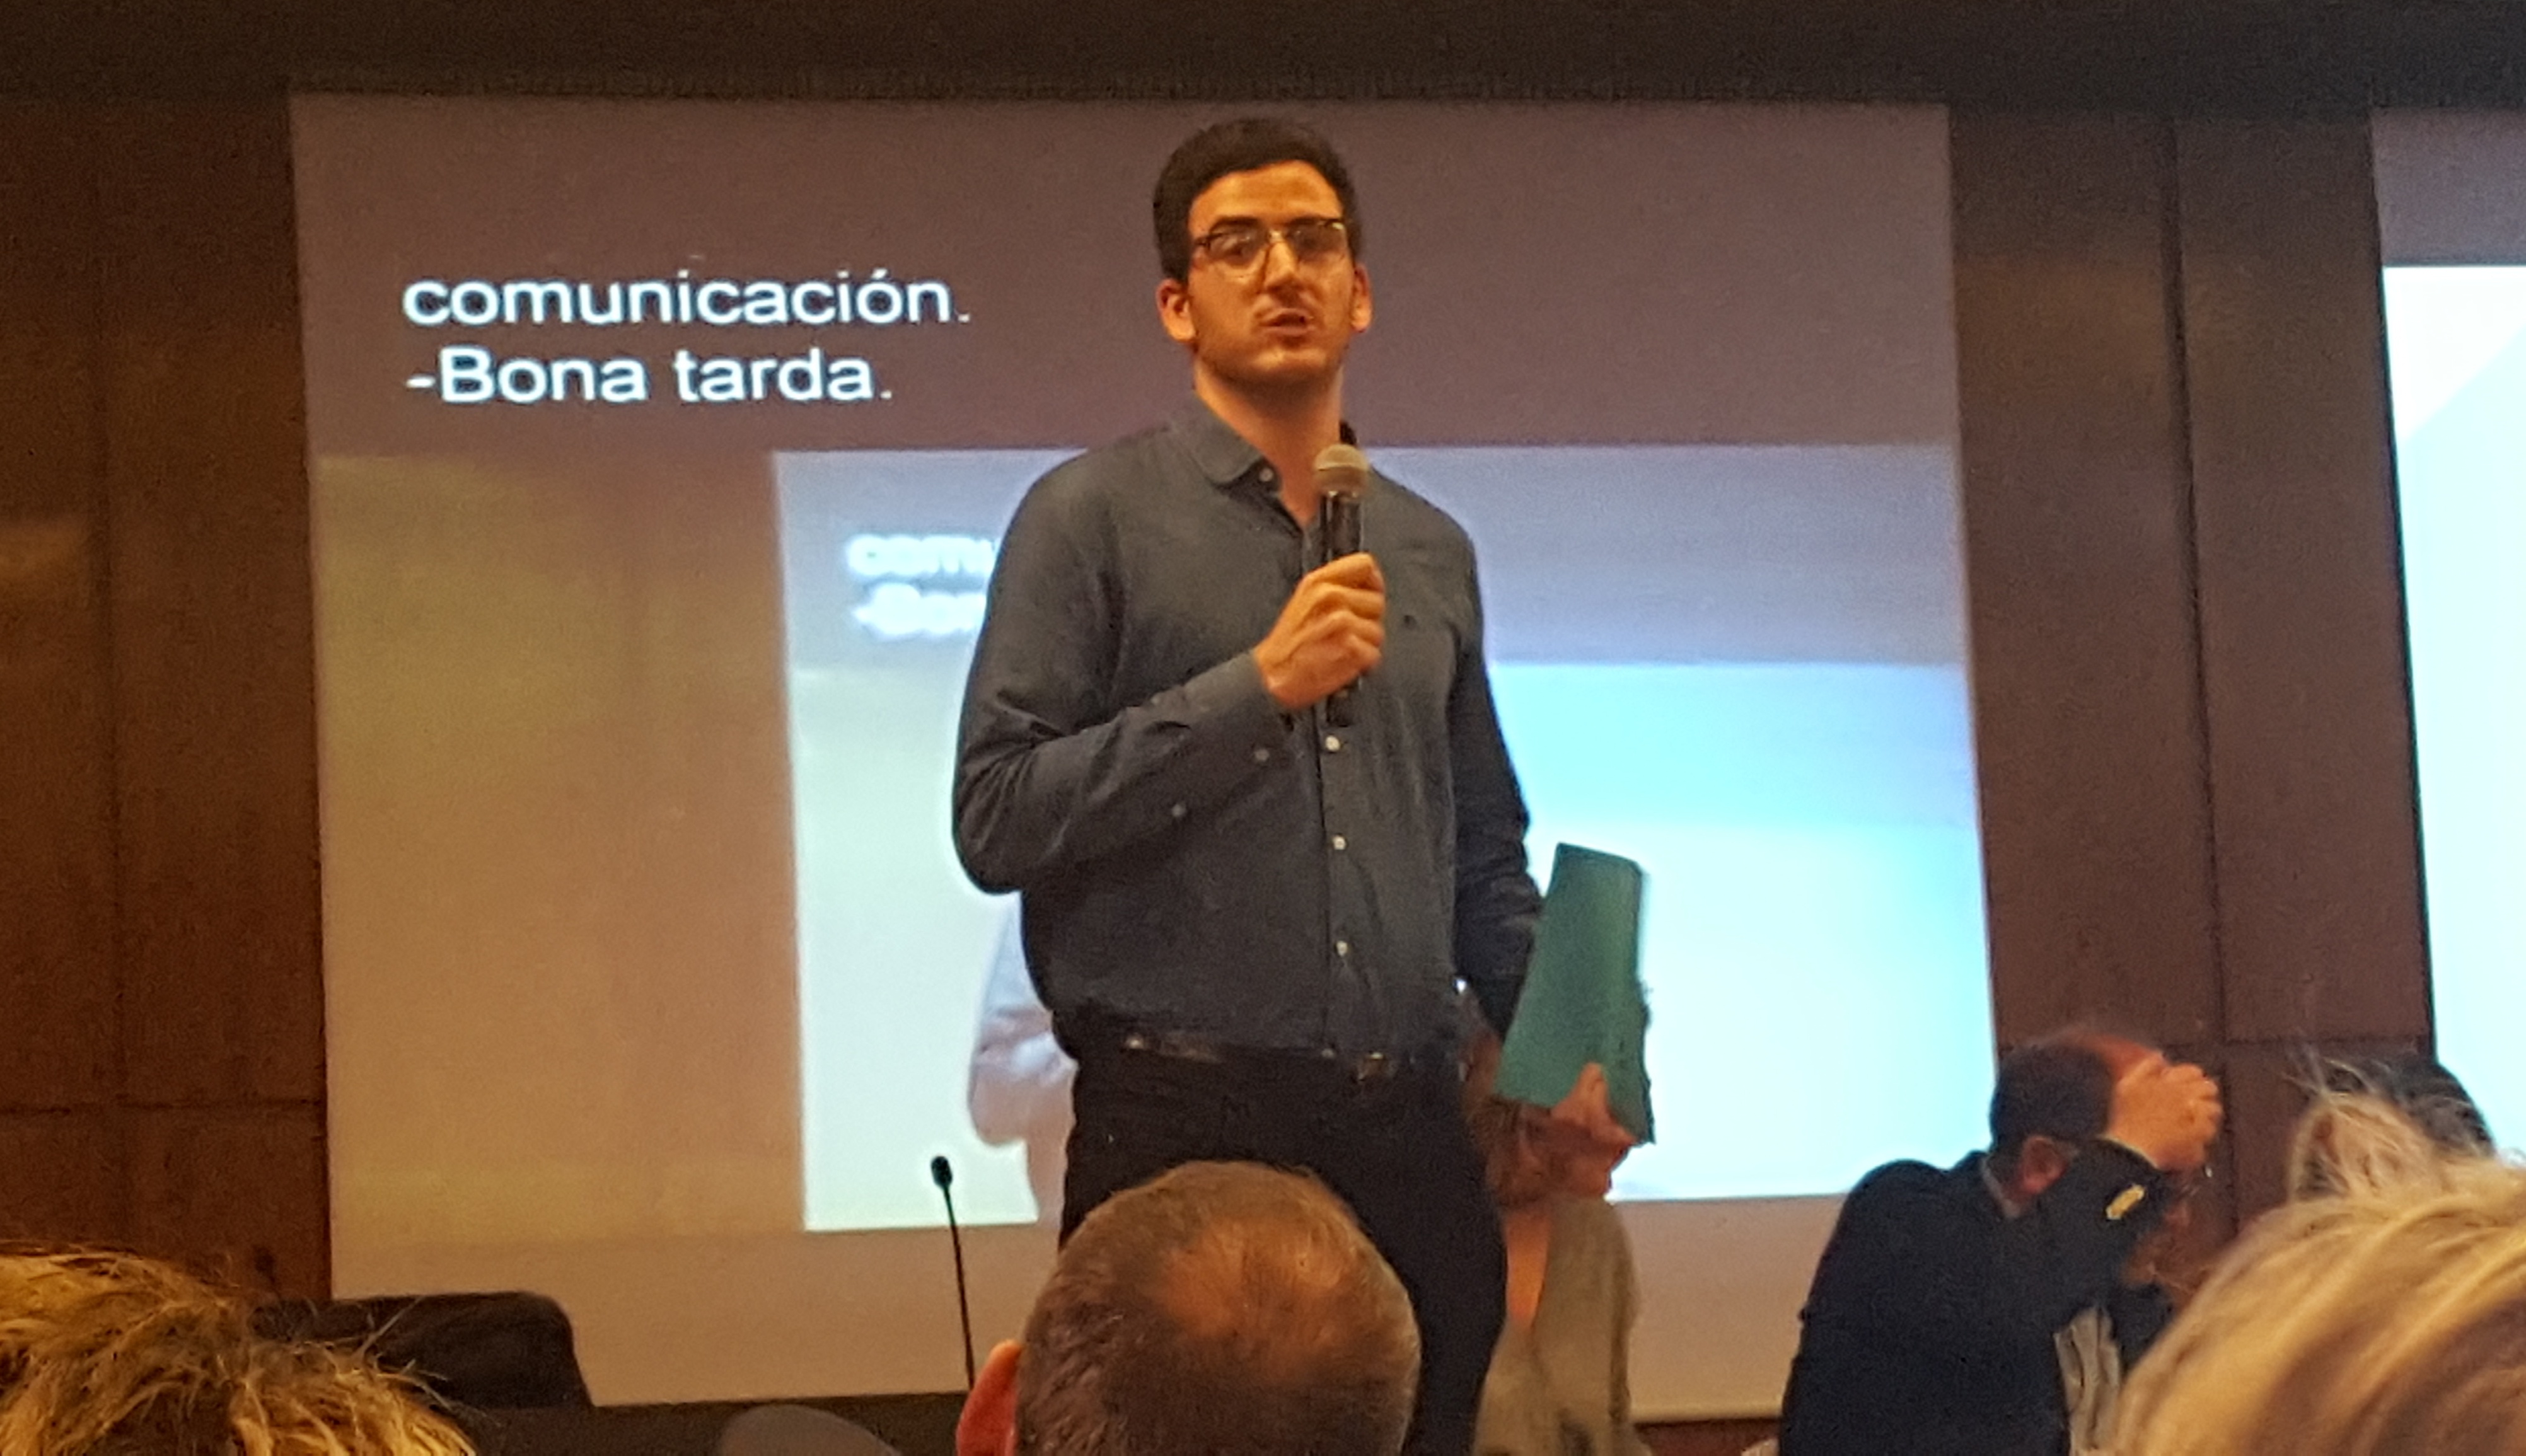 Carlos Pérez, arquitecte i jove amb discapacitat auditiva, es presenta com a candidat a la Junta Directiva del Col·legi Oficial d’Arquitectes de Catalunya